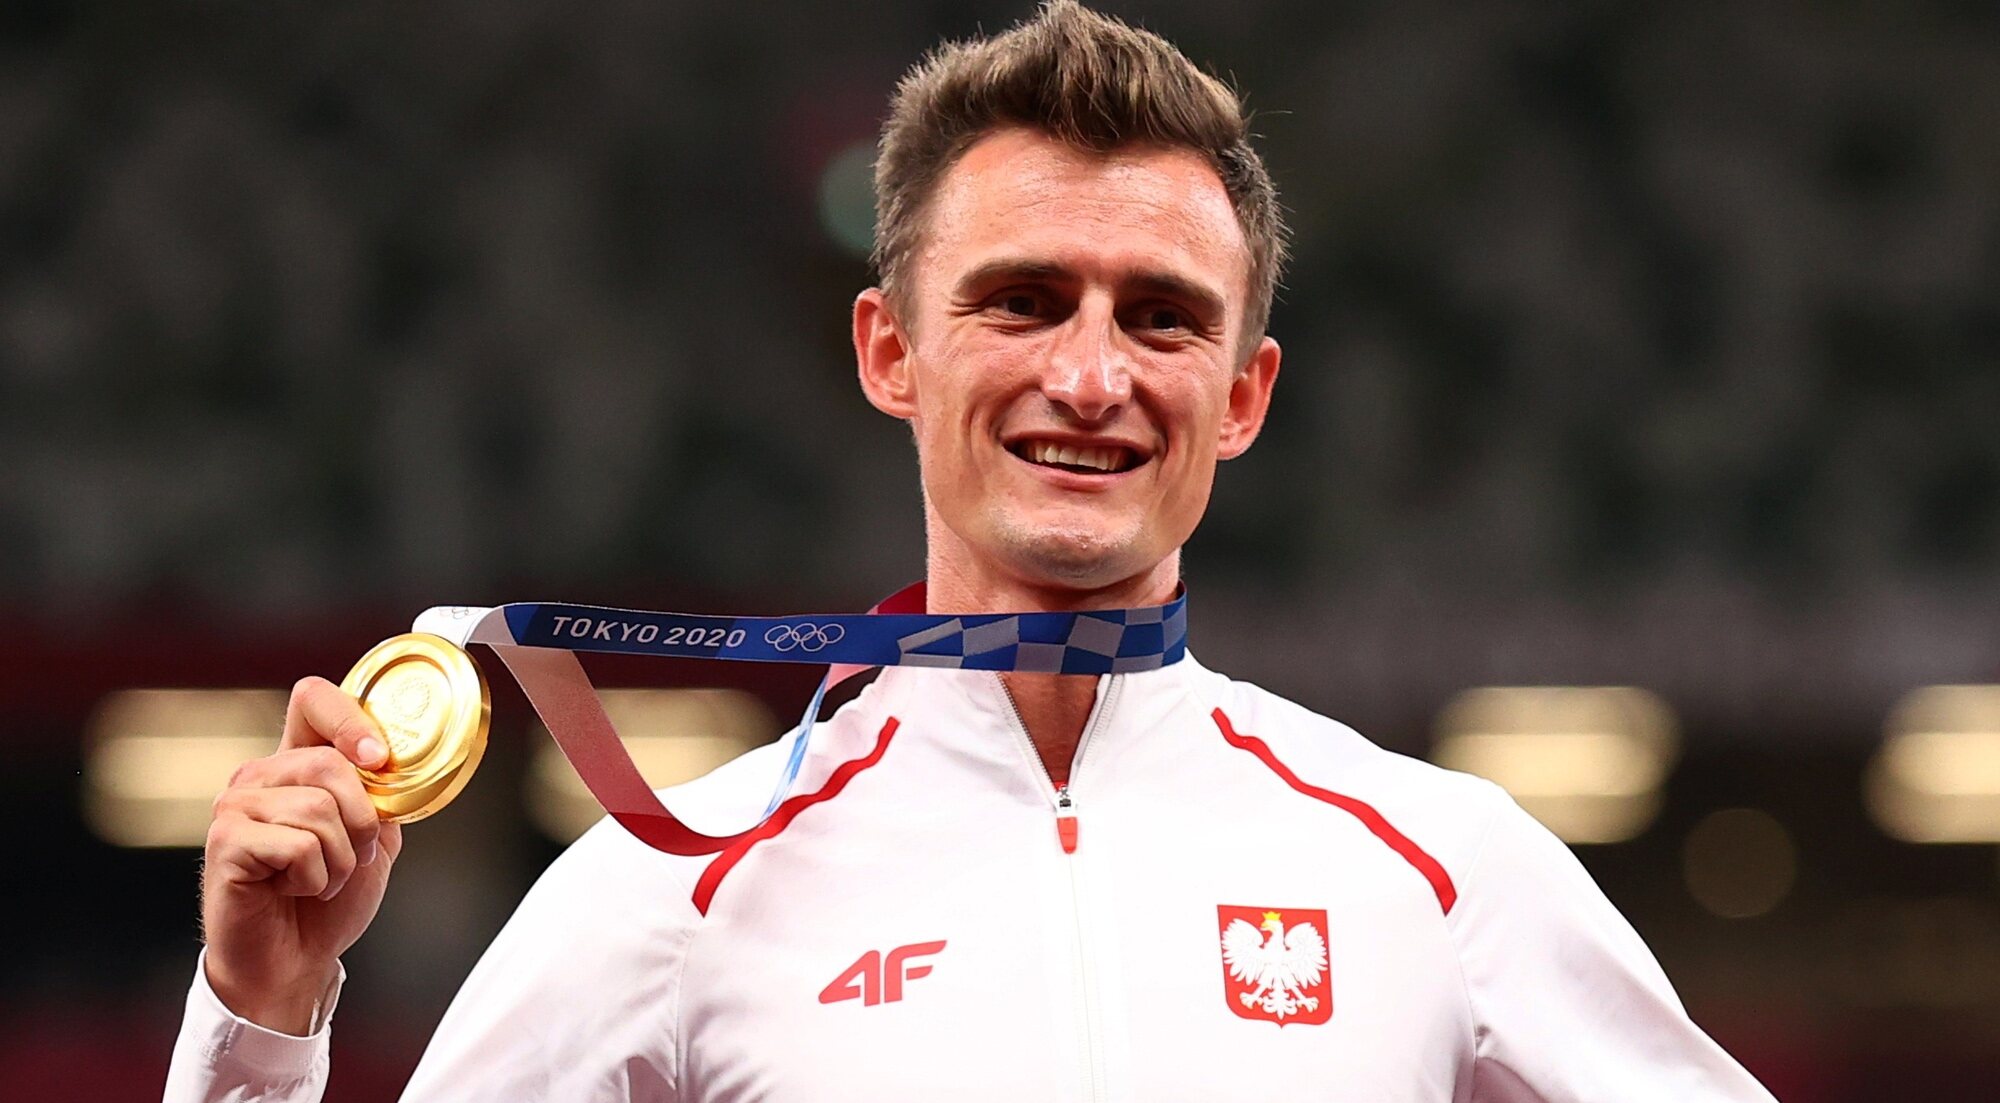 Dawid Tomala, campeón de la marcha 50 kilómetros en los Juegos Olímpicos Tokio 2020